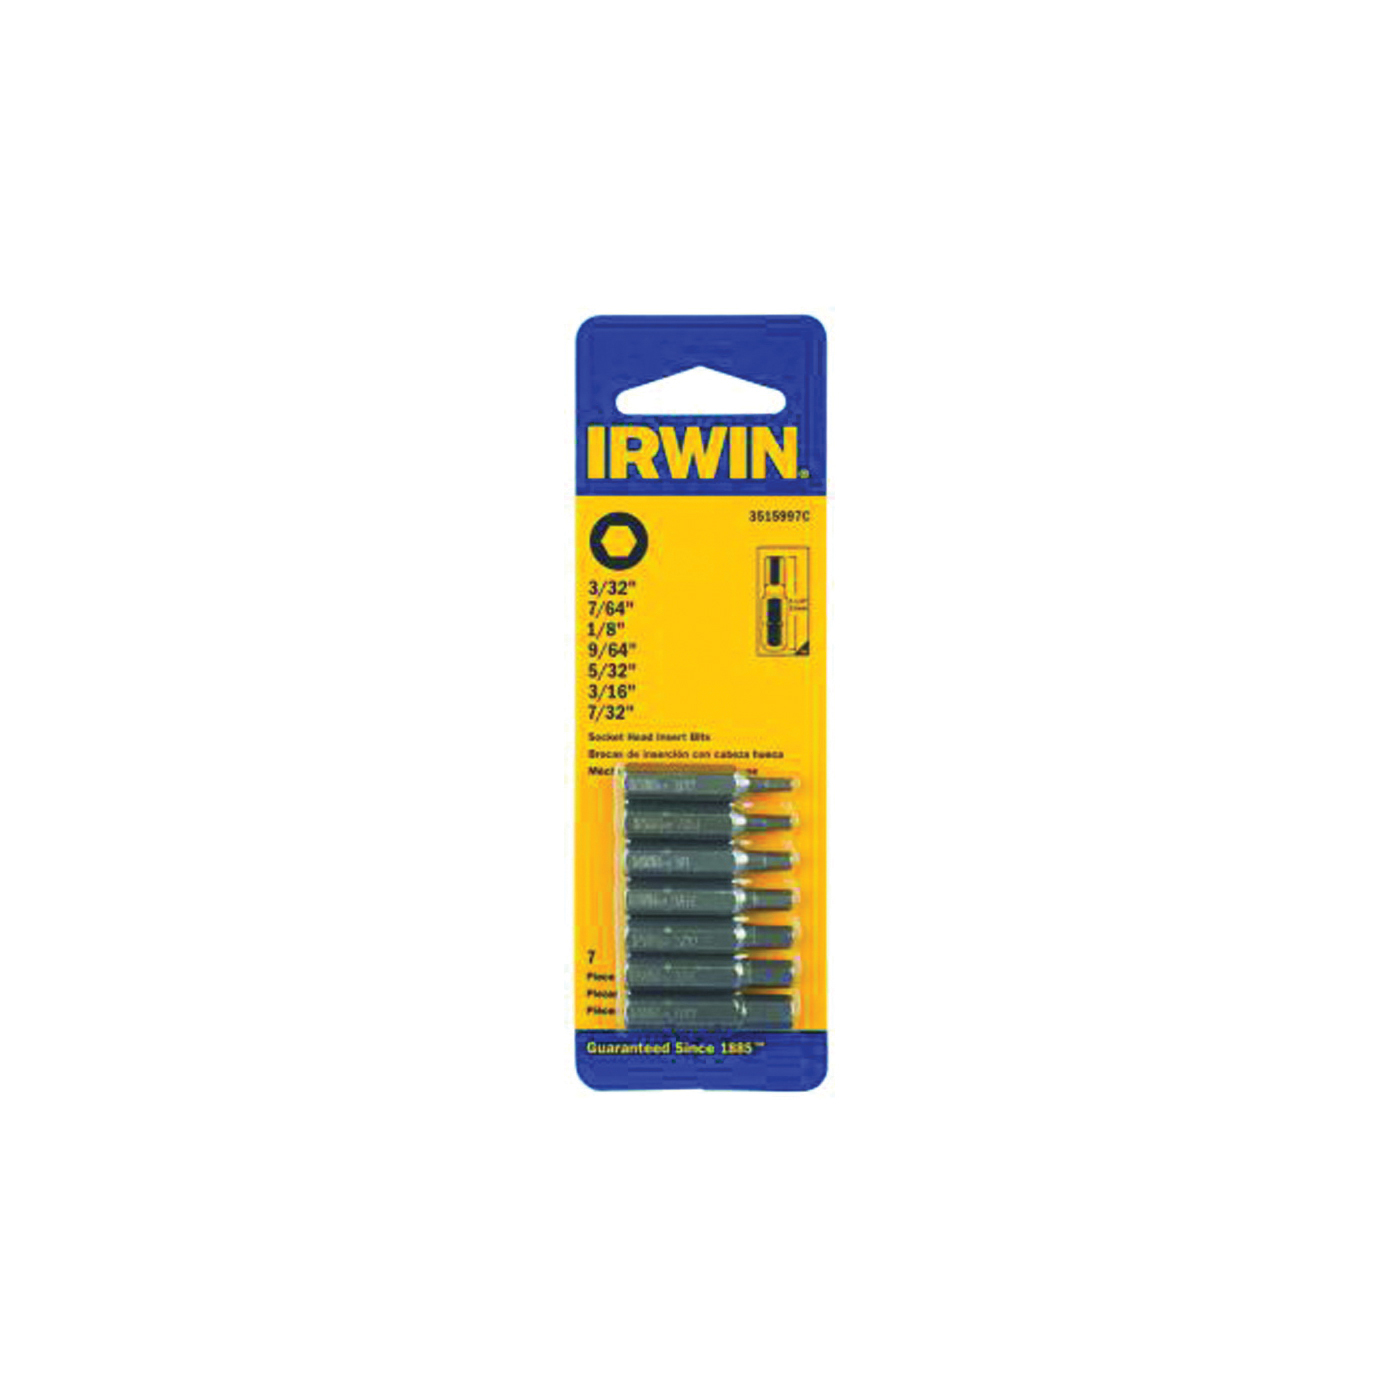 Irwin 3515997C